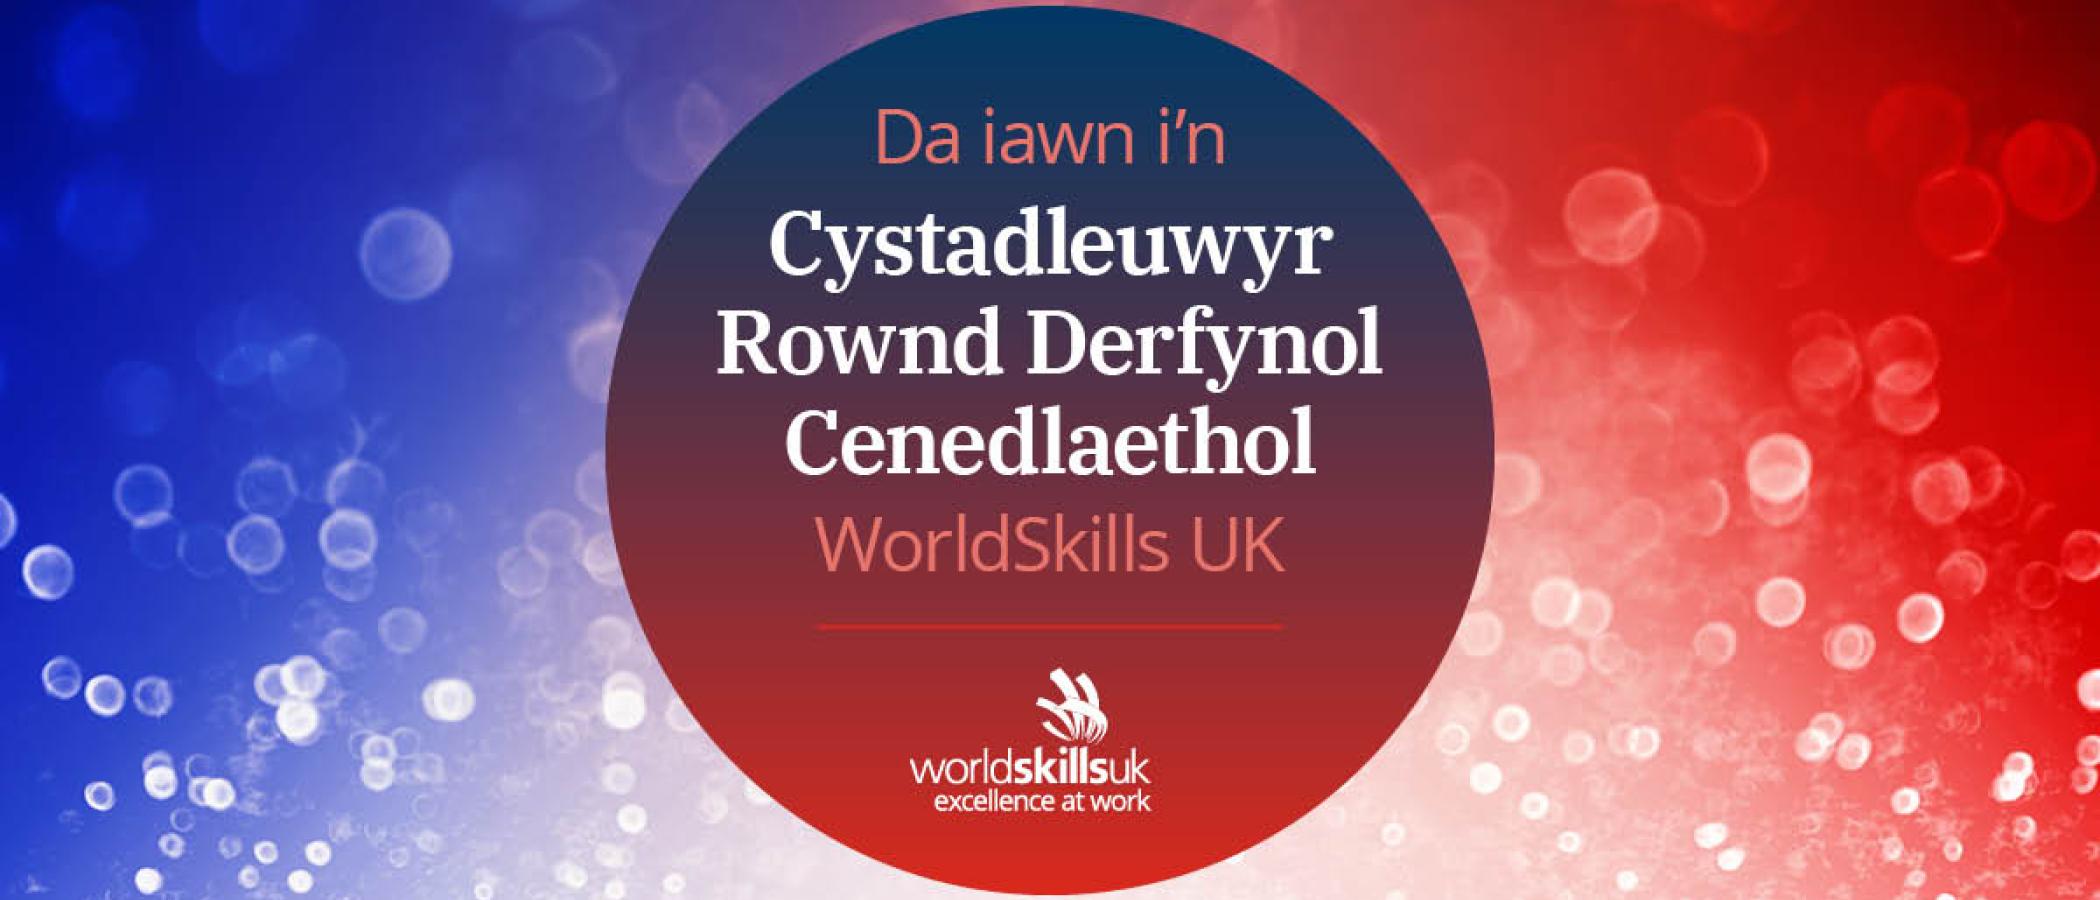 Graffeg "Da iawn i'n Cystadleuwyr Rownd Derfynol Cenedlaethol WorldSkills UK"